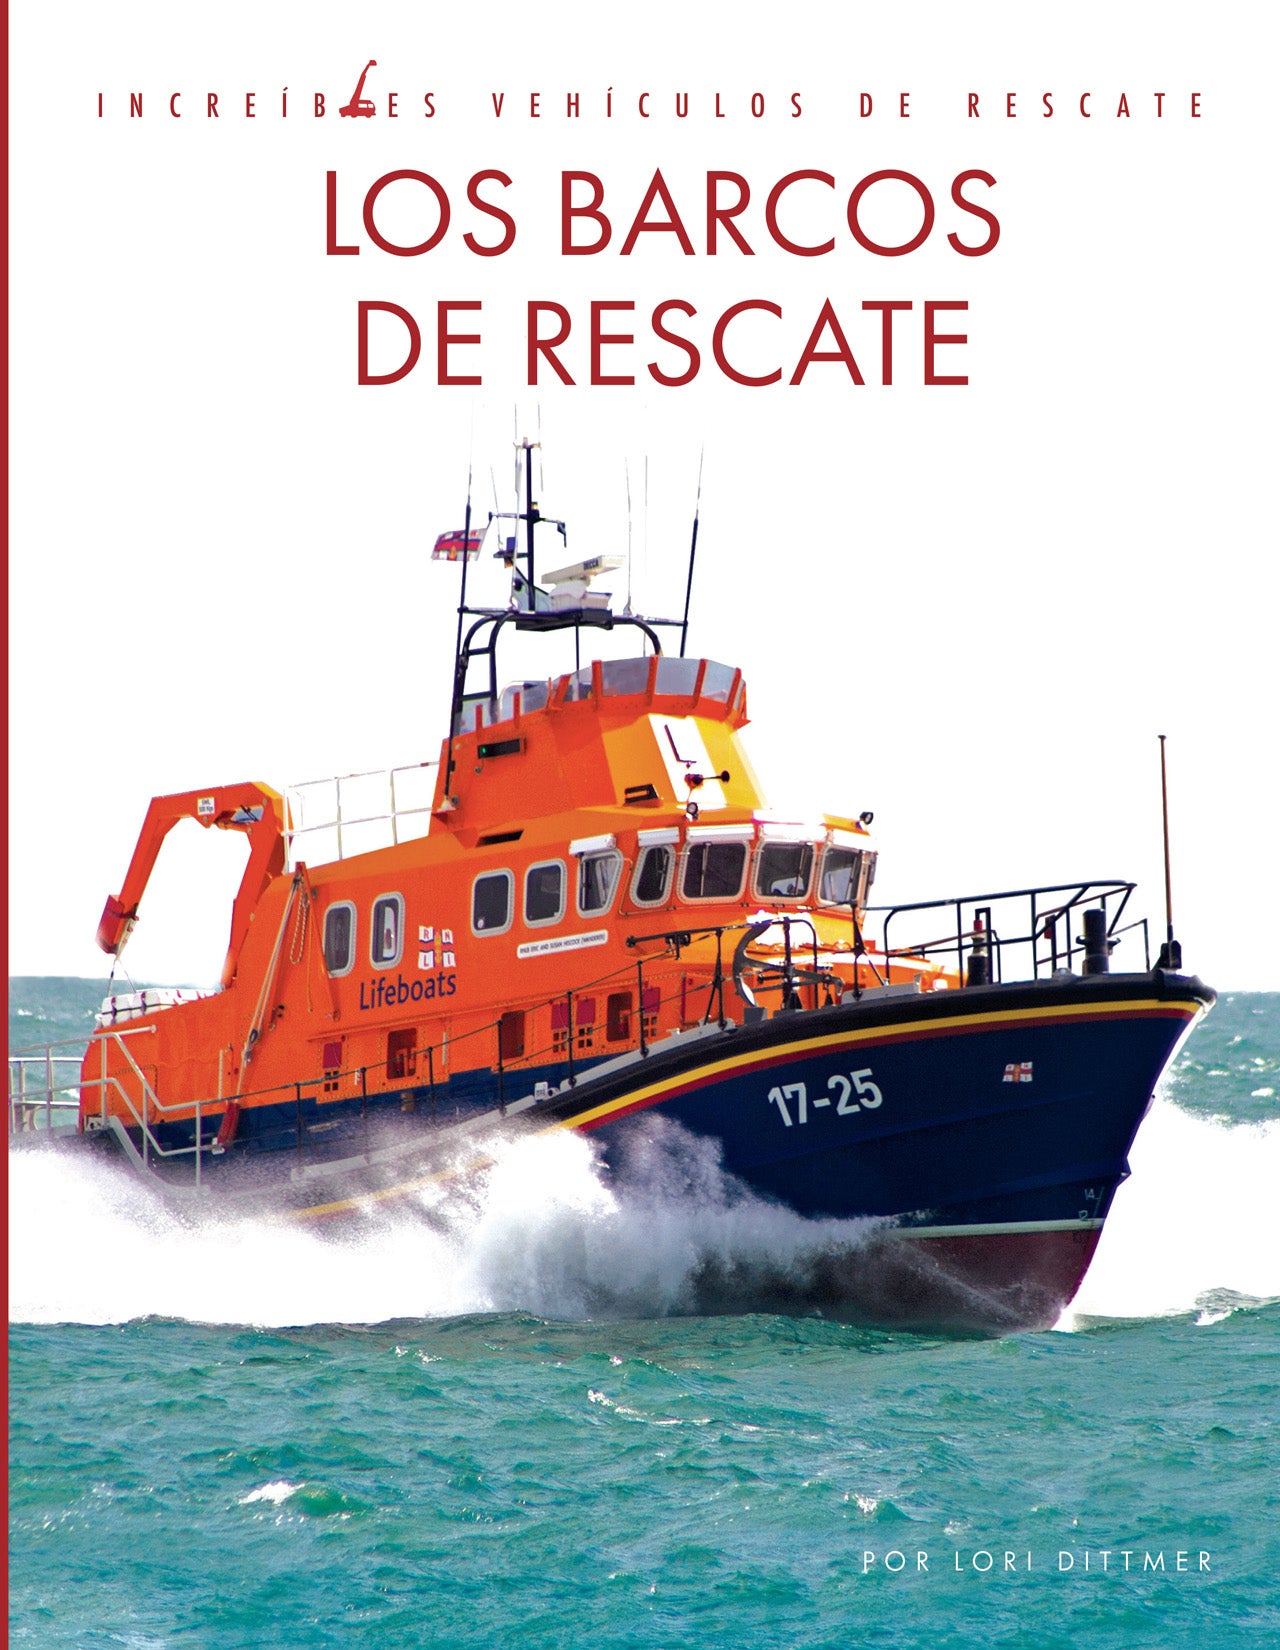 Increíbles vehículos de rescate: Los barcos de rescate